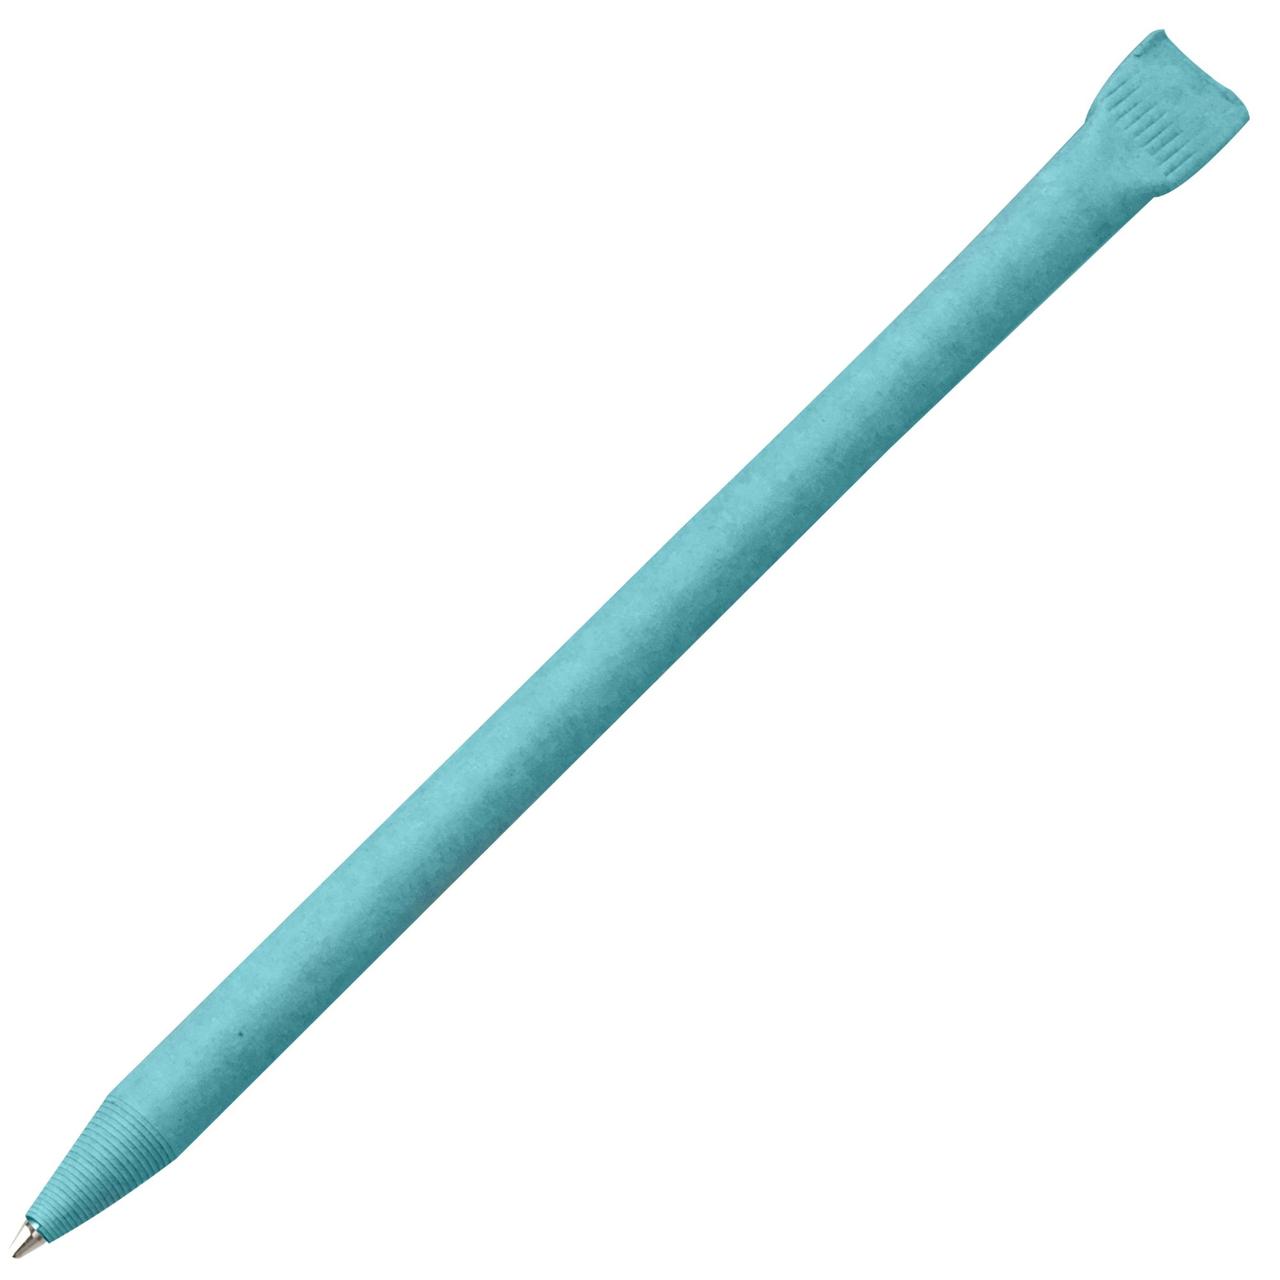 Ручка шариковая Carton Color, голубая (артикул 15896.44)